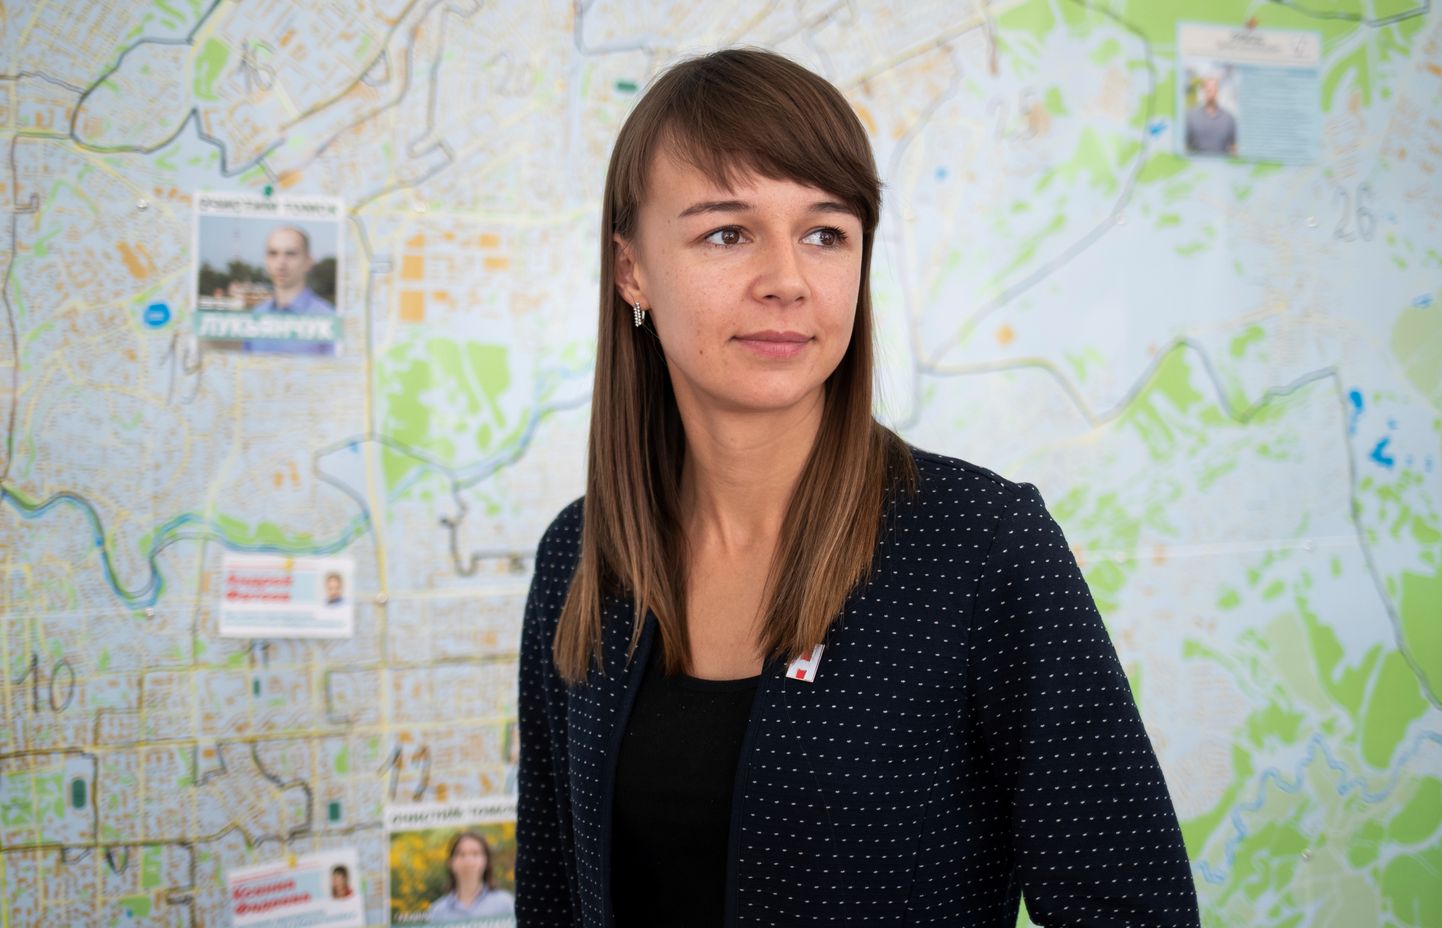 Tomski linna opositsioonikandidaat ja Aleksei Navalnõi organisatsiooni kohaliku haru juht Ksenia Fadejeva kindlustas koha volikogus.